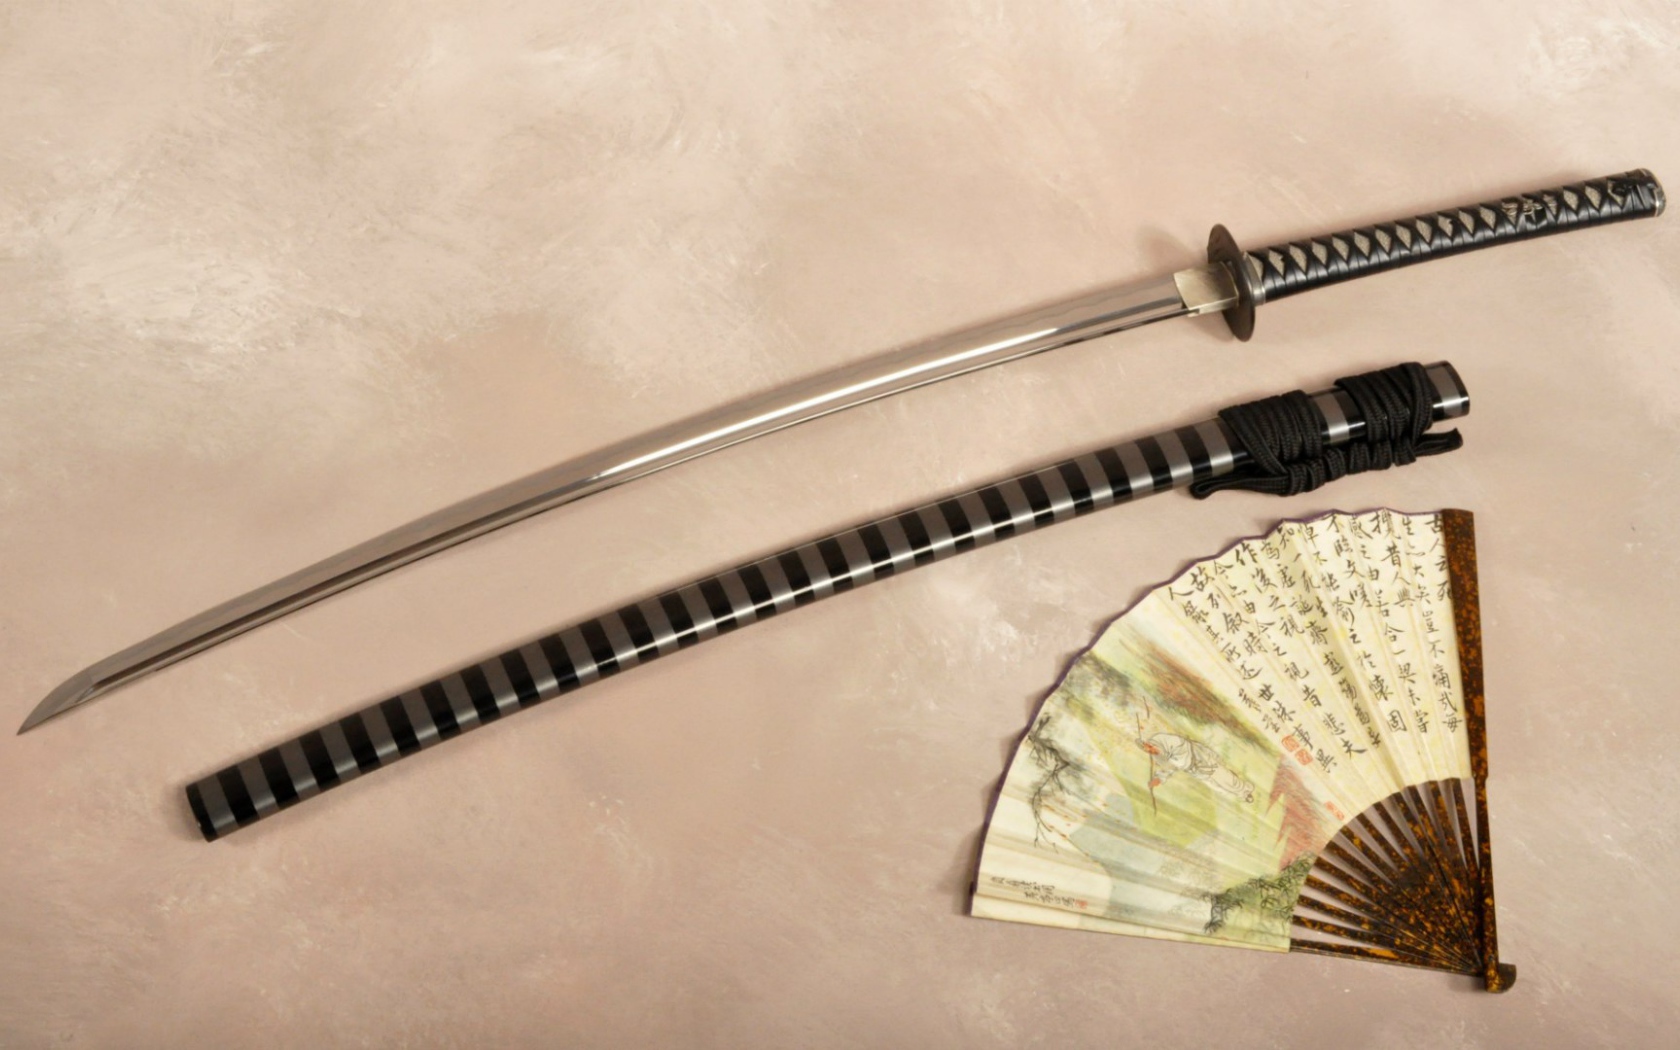 Japanese katana sword